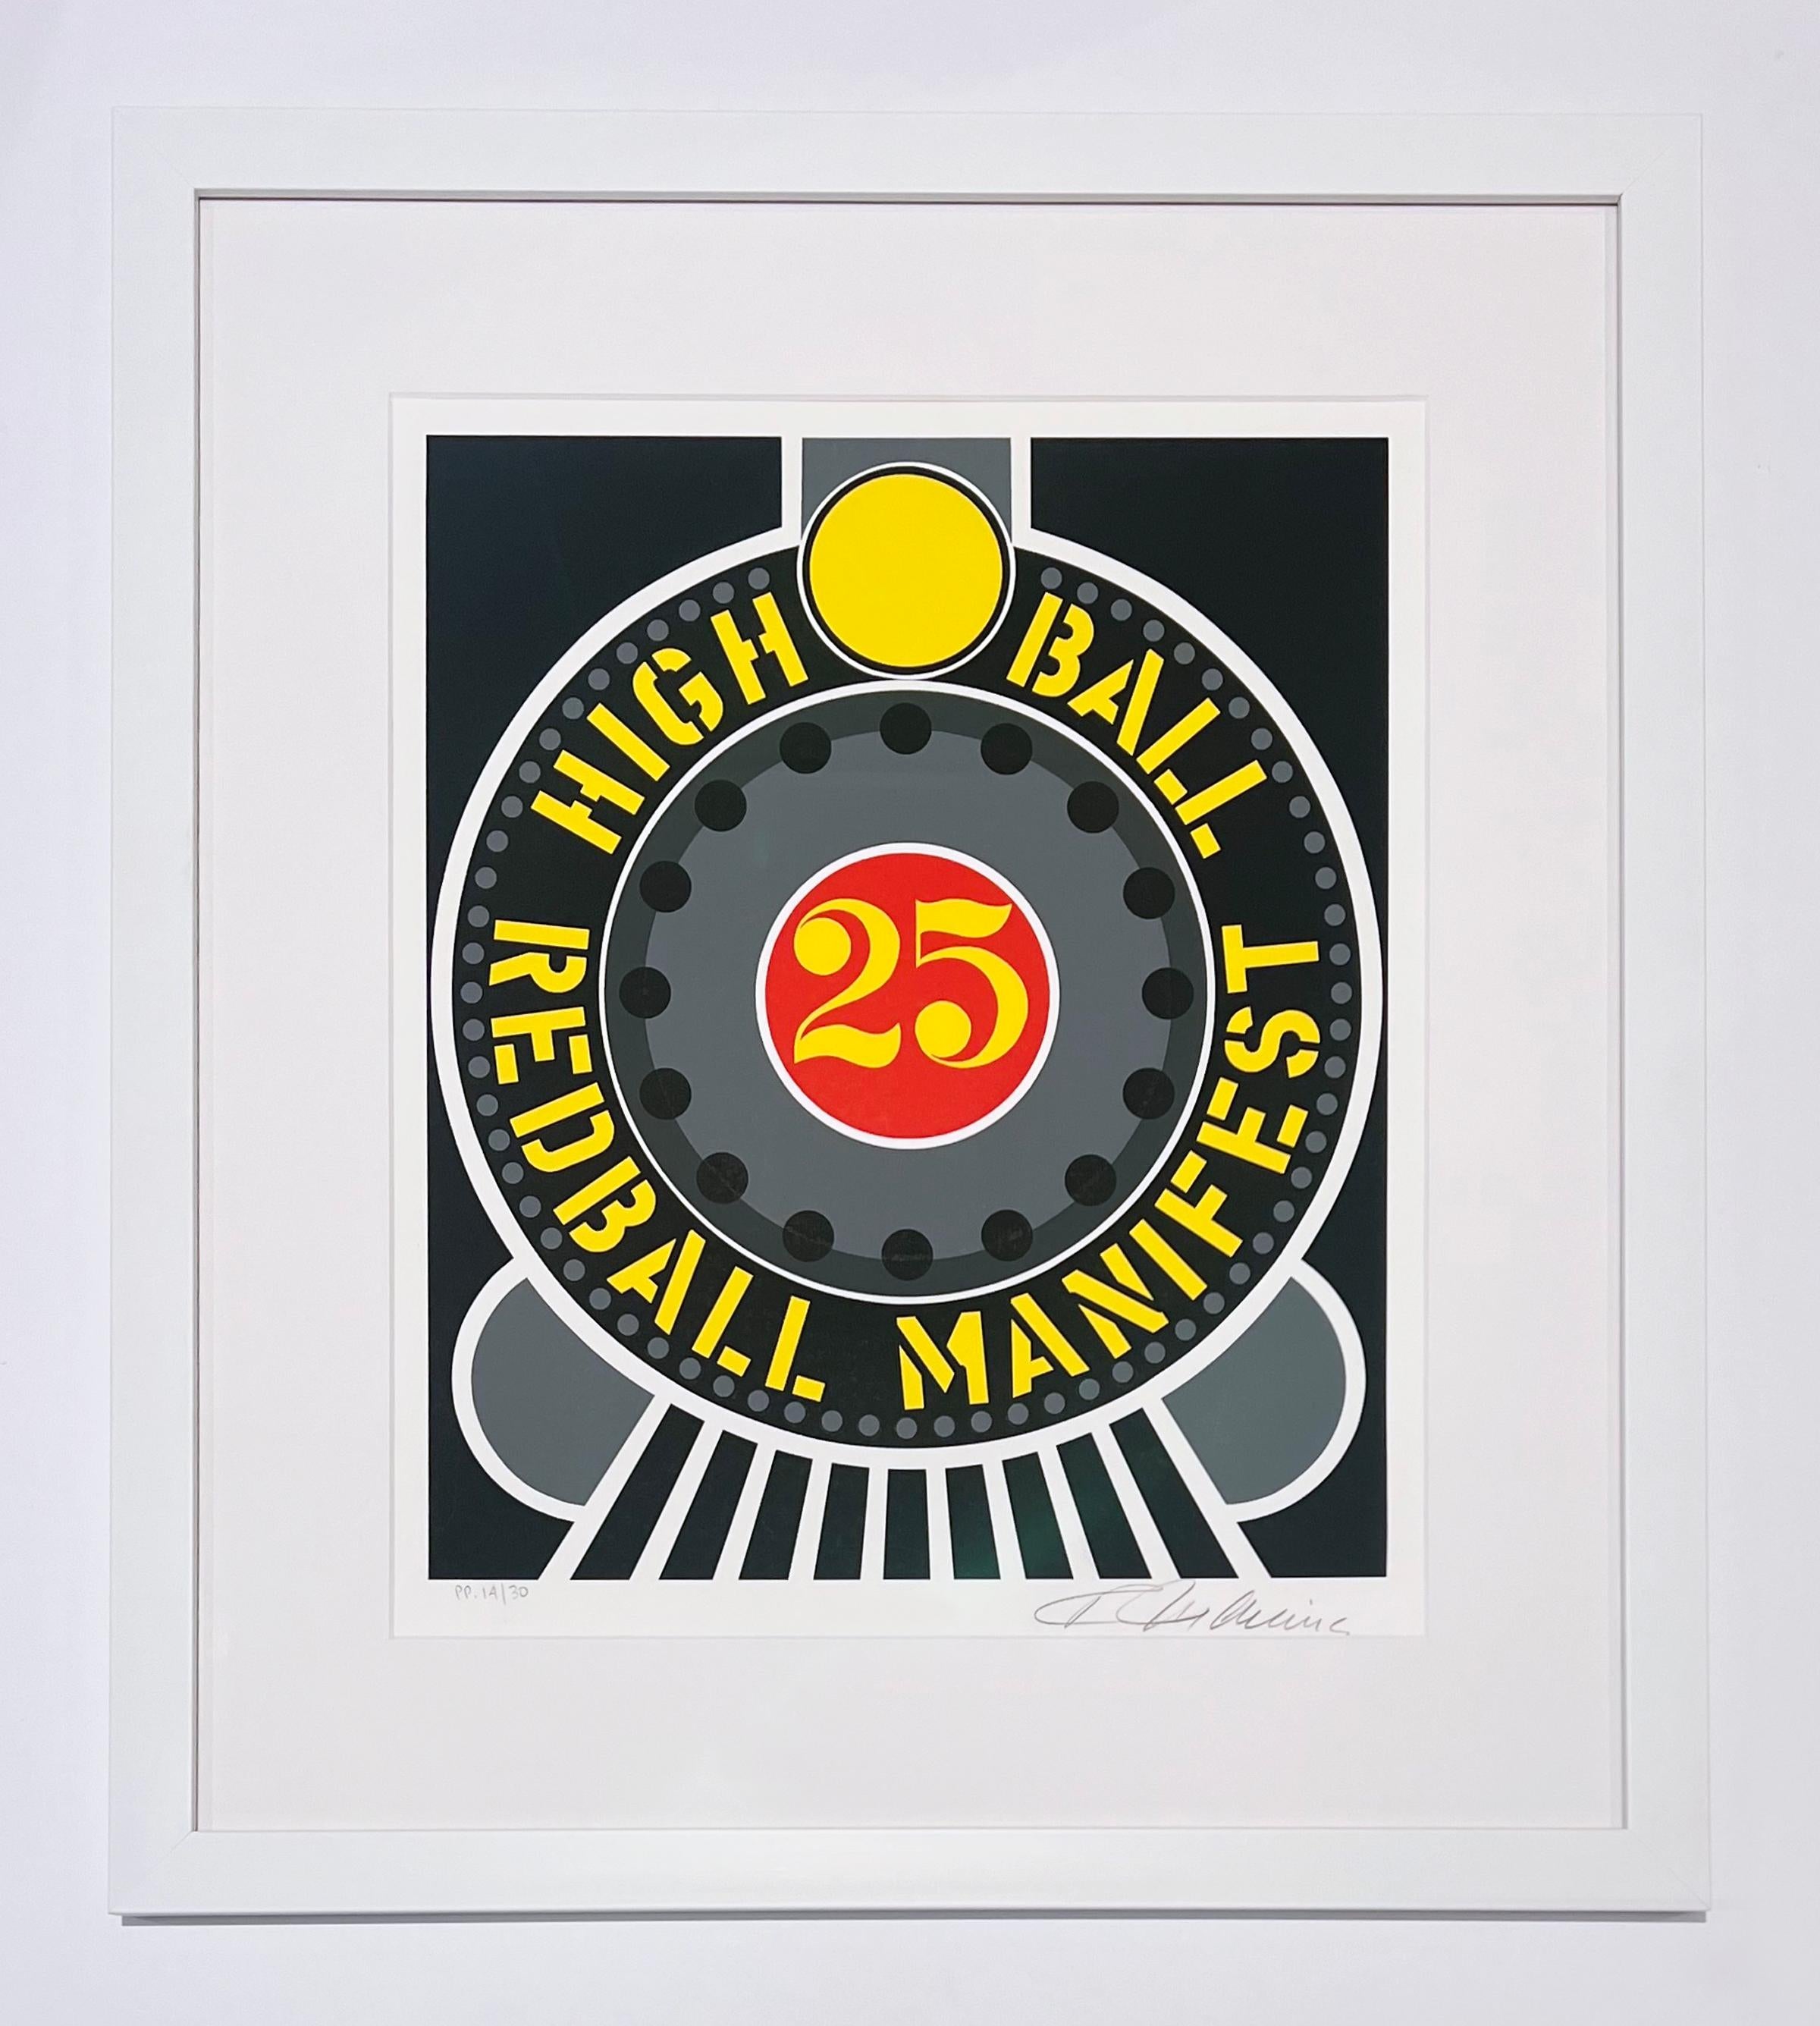 Highball auf dem Redball- Manifest – Print von Robert Indiana